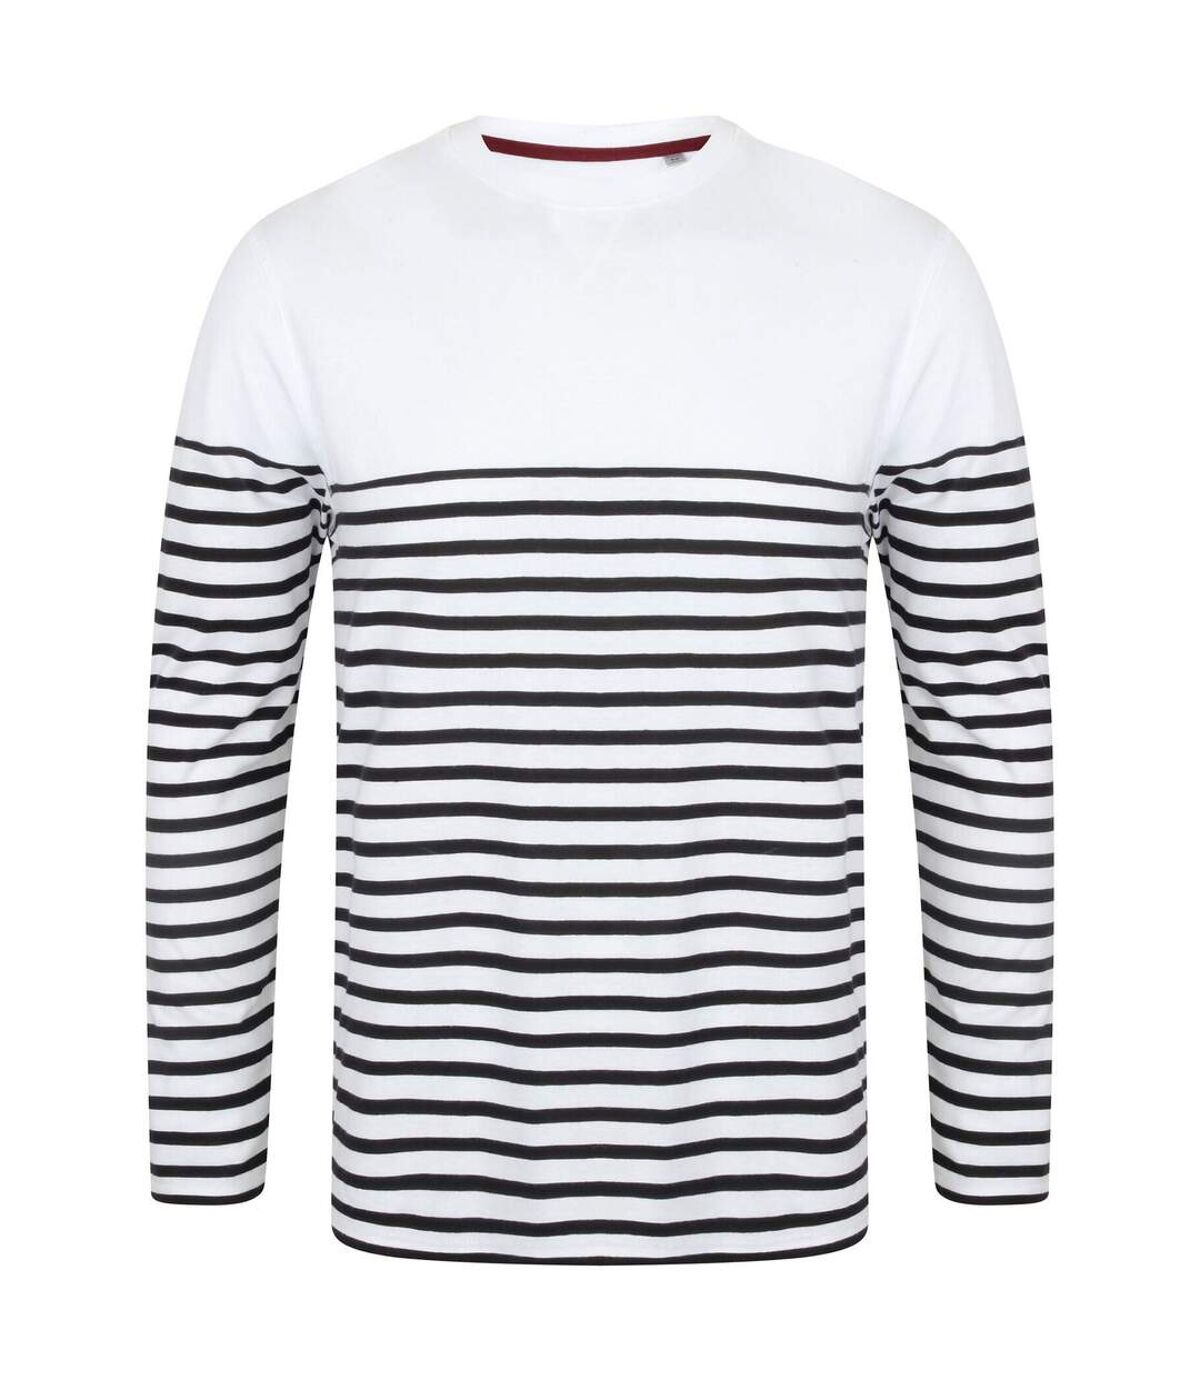 Front Row T-shirt rayé breton à manches longues pour hommes (Blanc / bleu marine) - UTPC2943